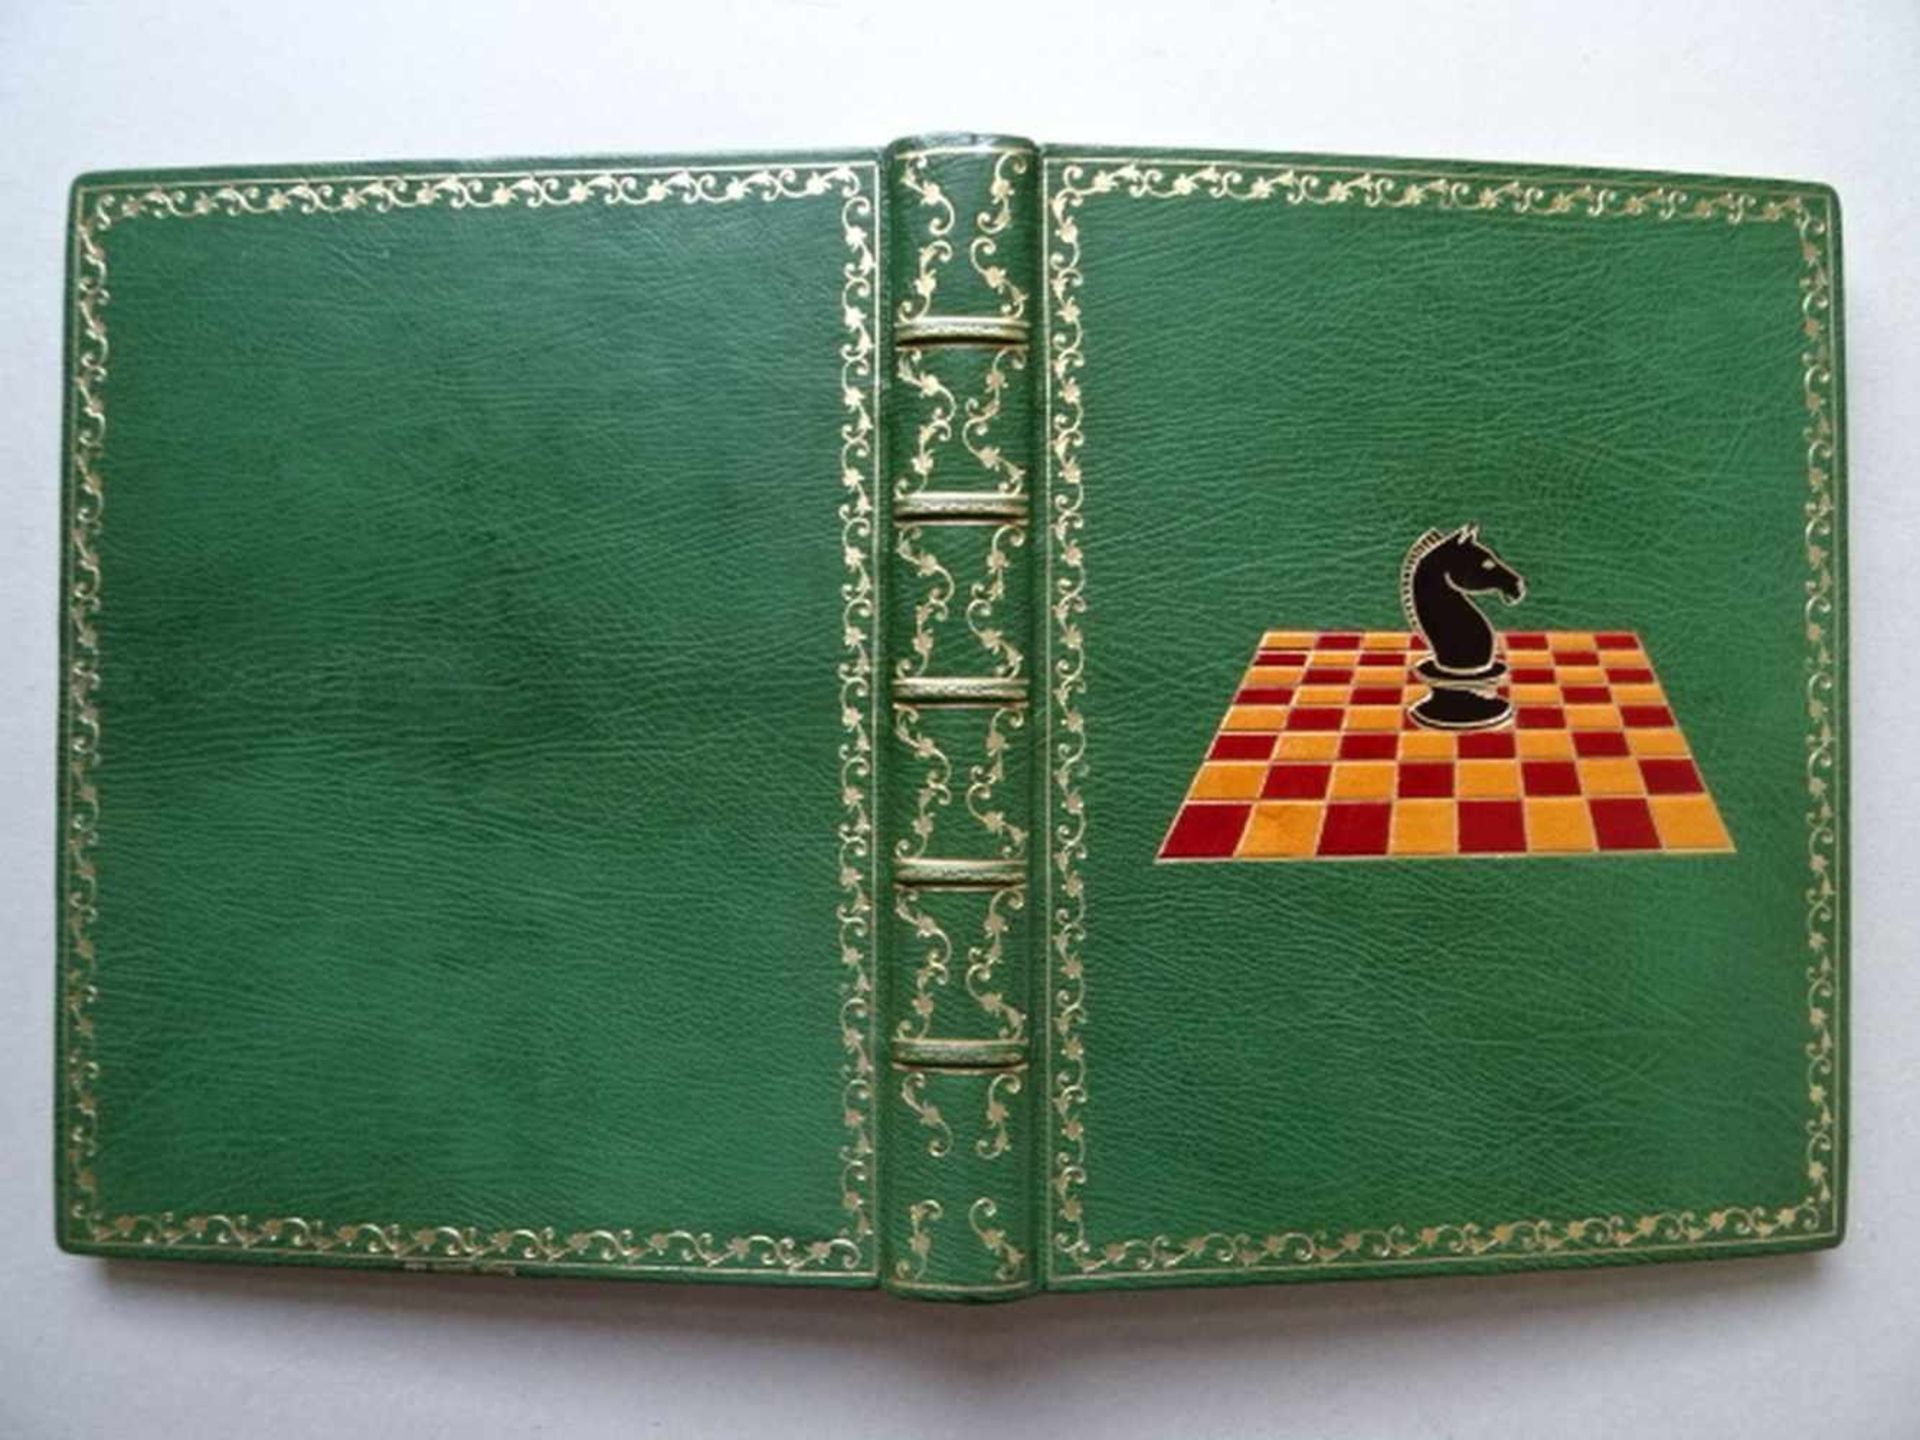 Einbände.-Gästebuch eines Schachspielers. Ca. 150 weiße Blätter. Um 1970. 4°. Grüner Maroquin-